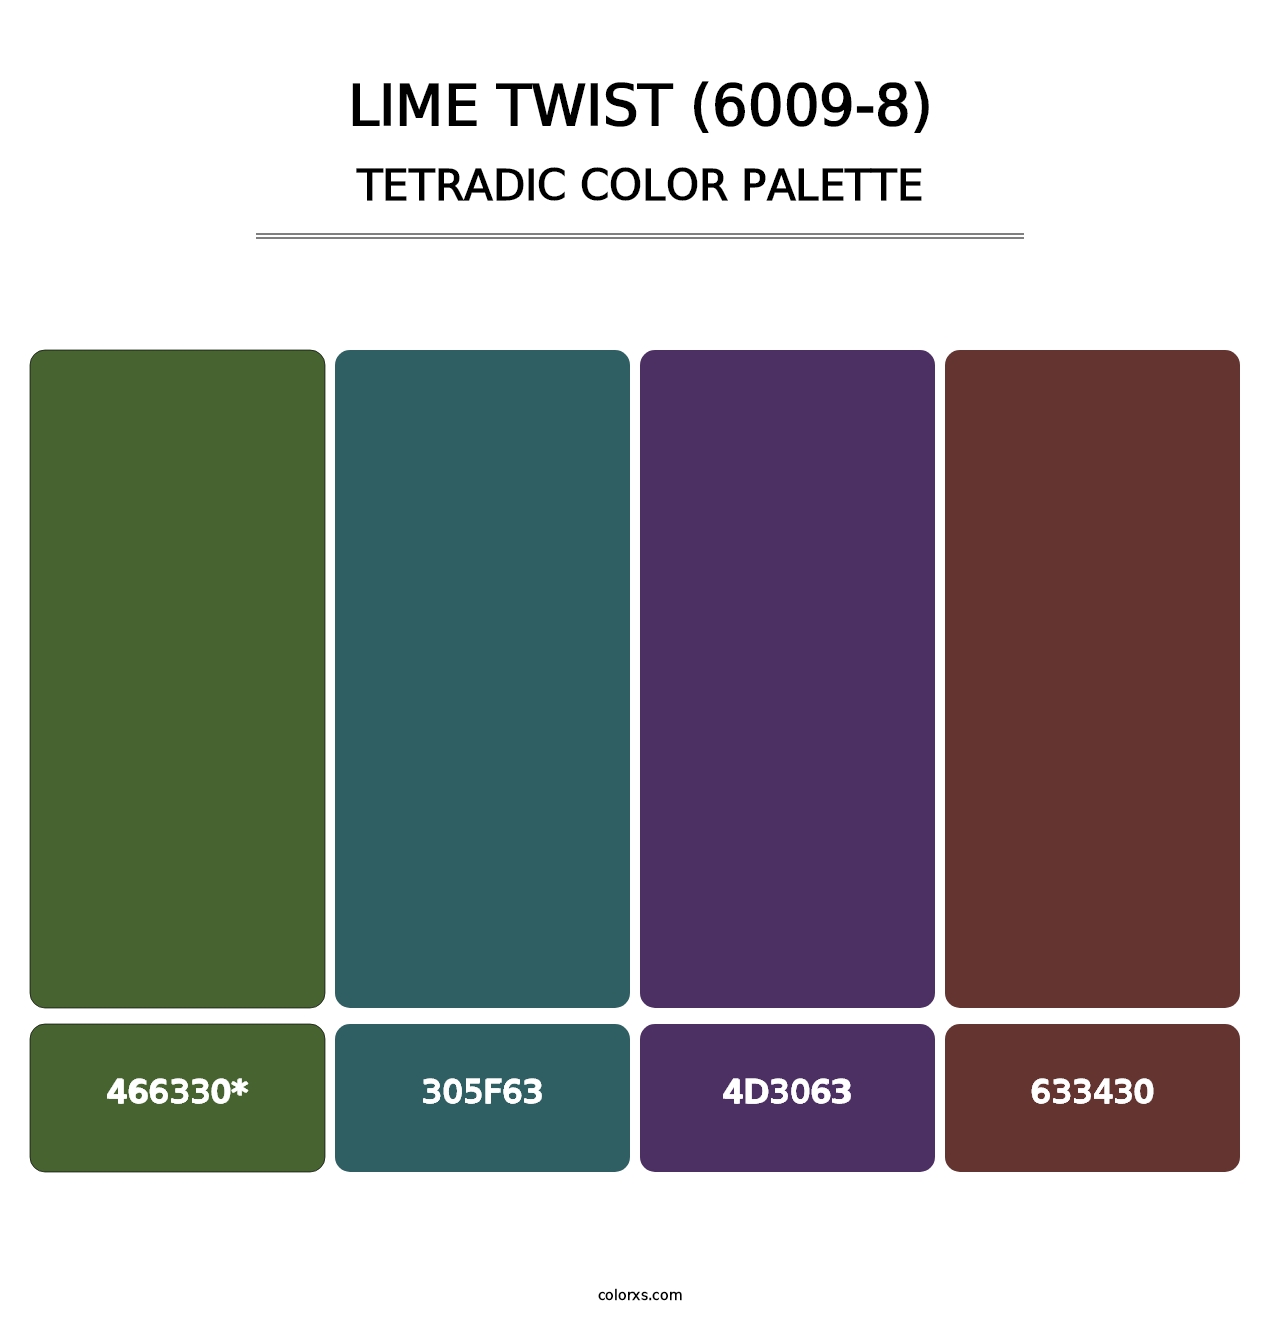 Lime Twist (6009-8) - Tetradic Color Palette